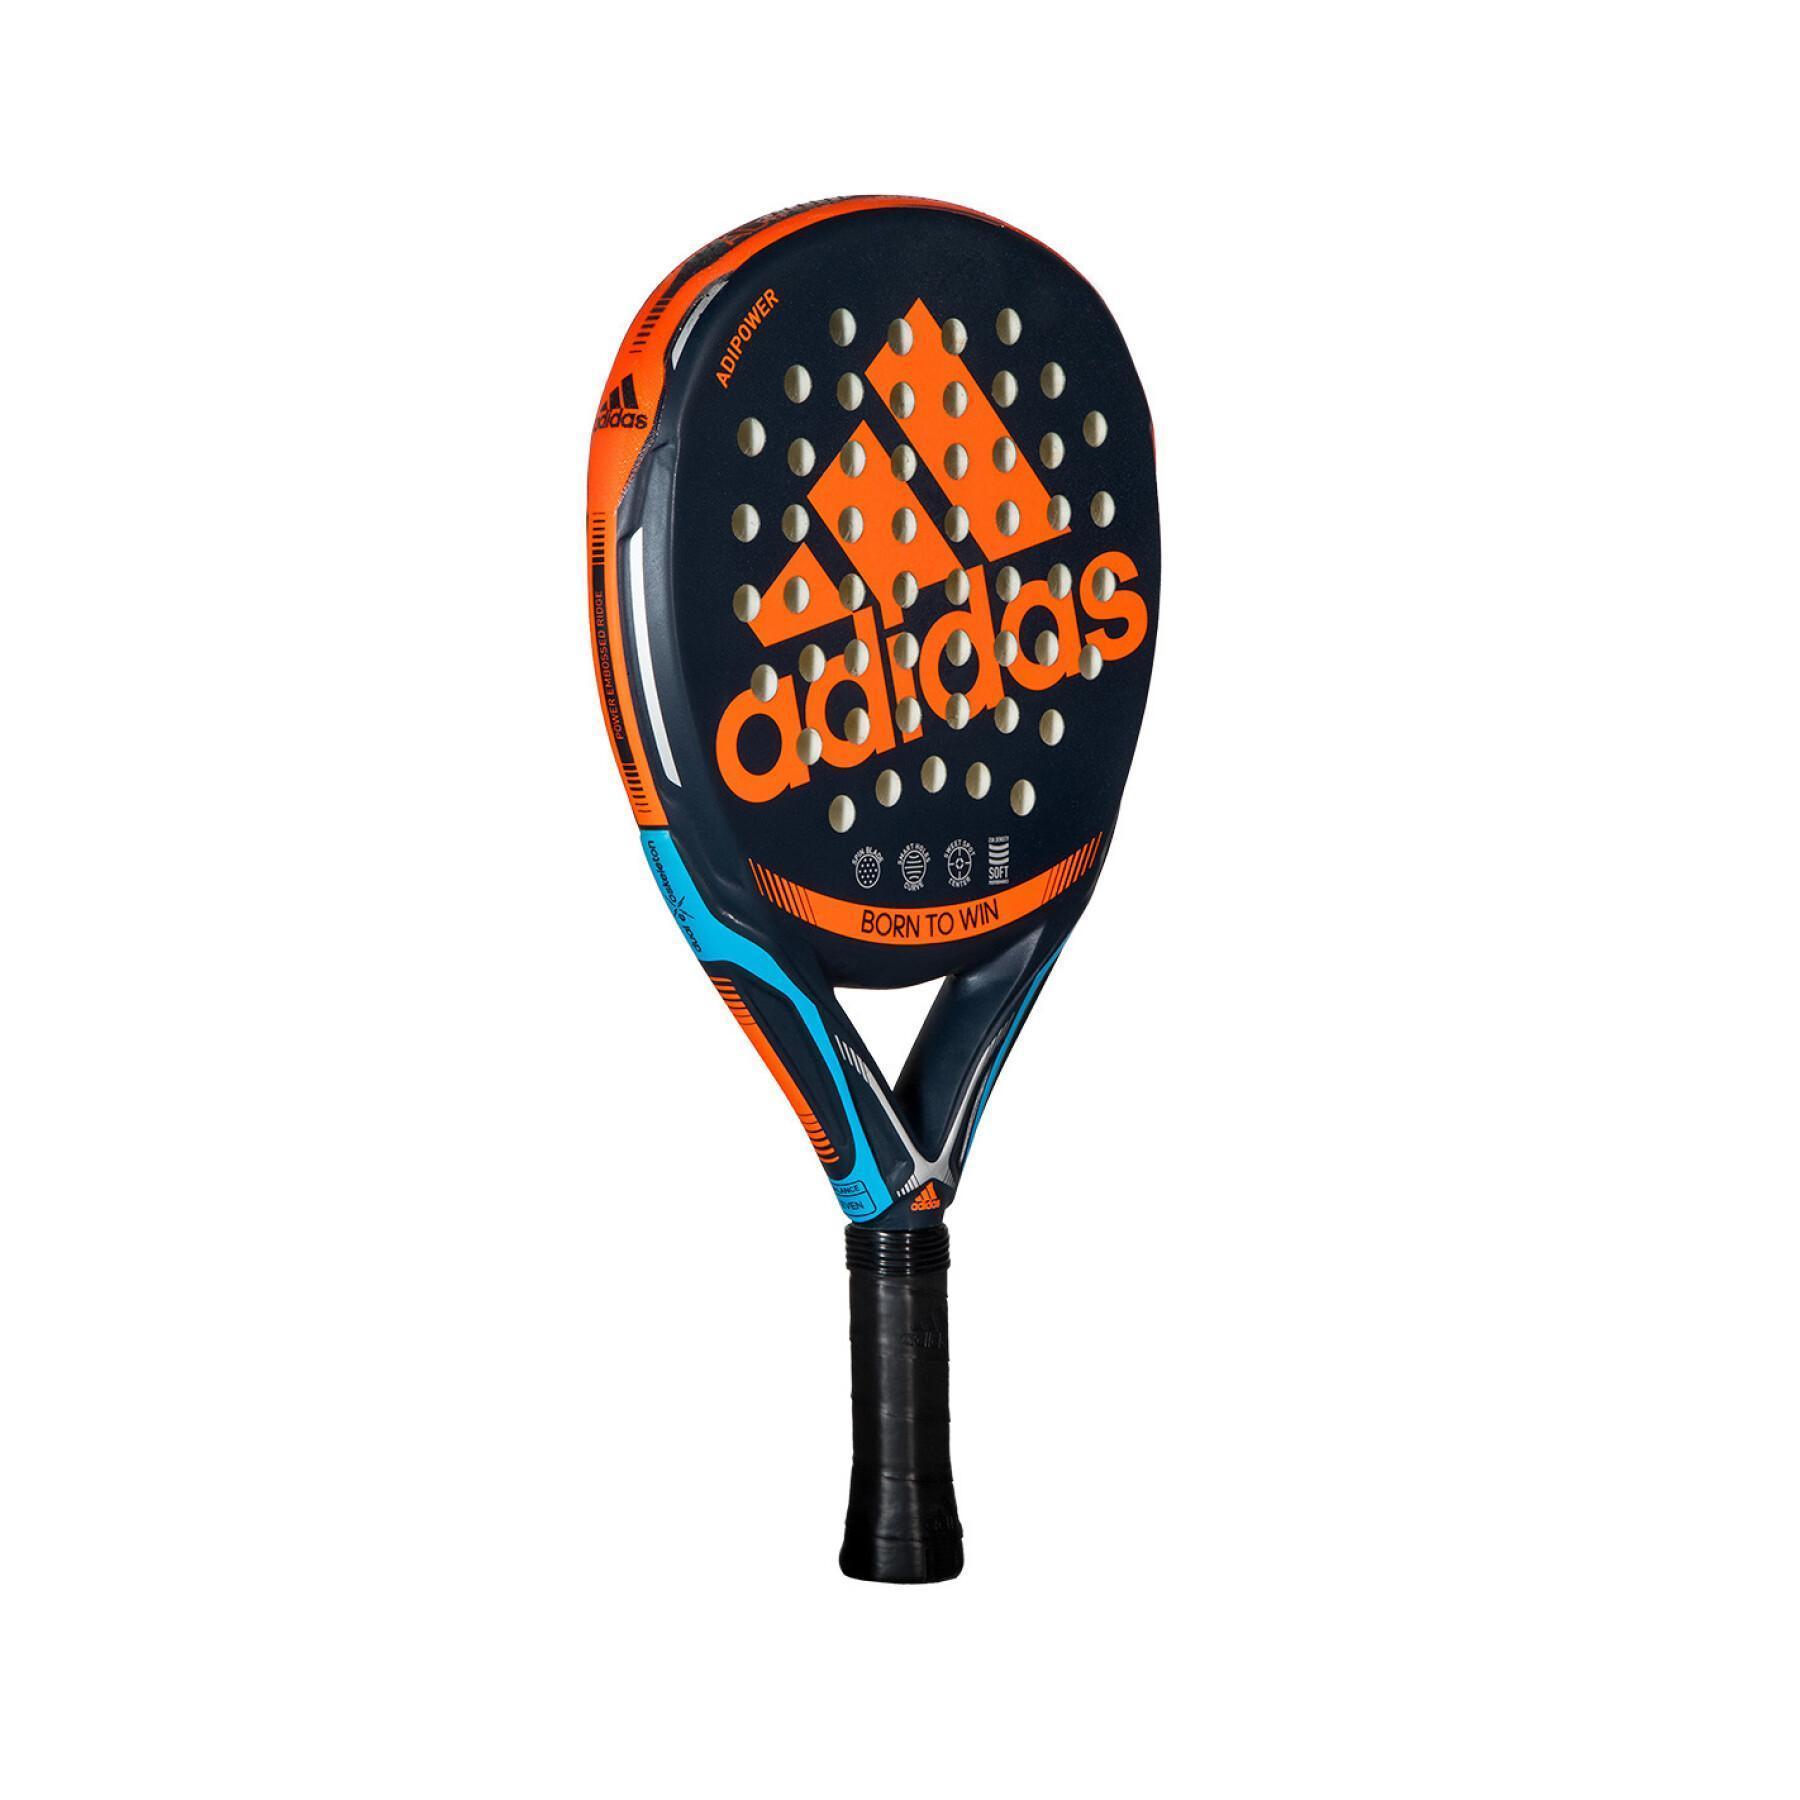 Racchetta da paddle tennis adidas Adipower CTRL Lite 3.1